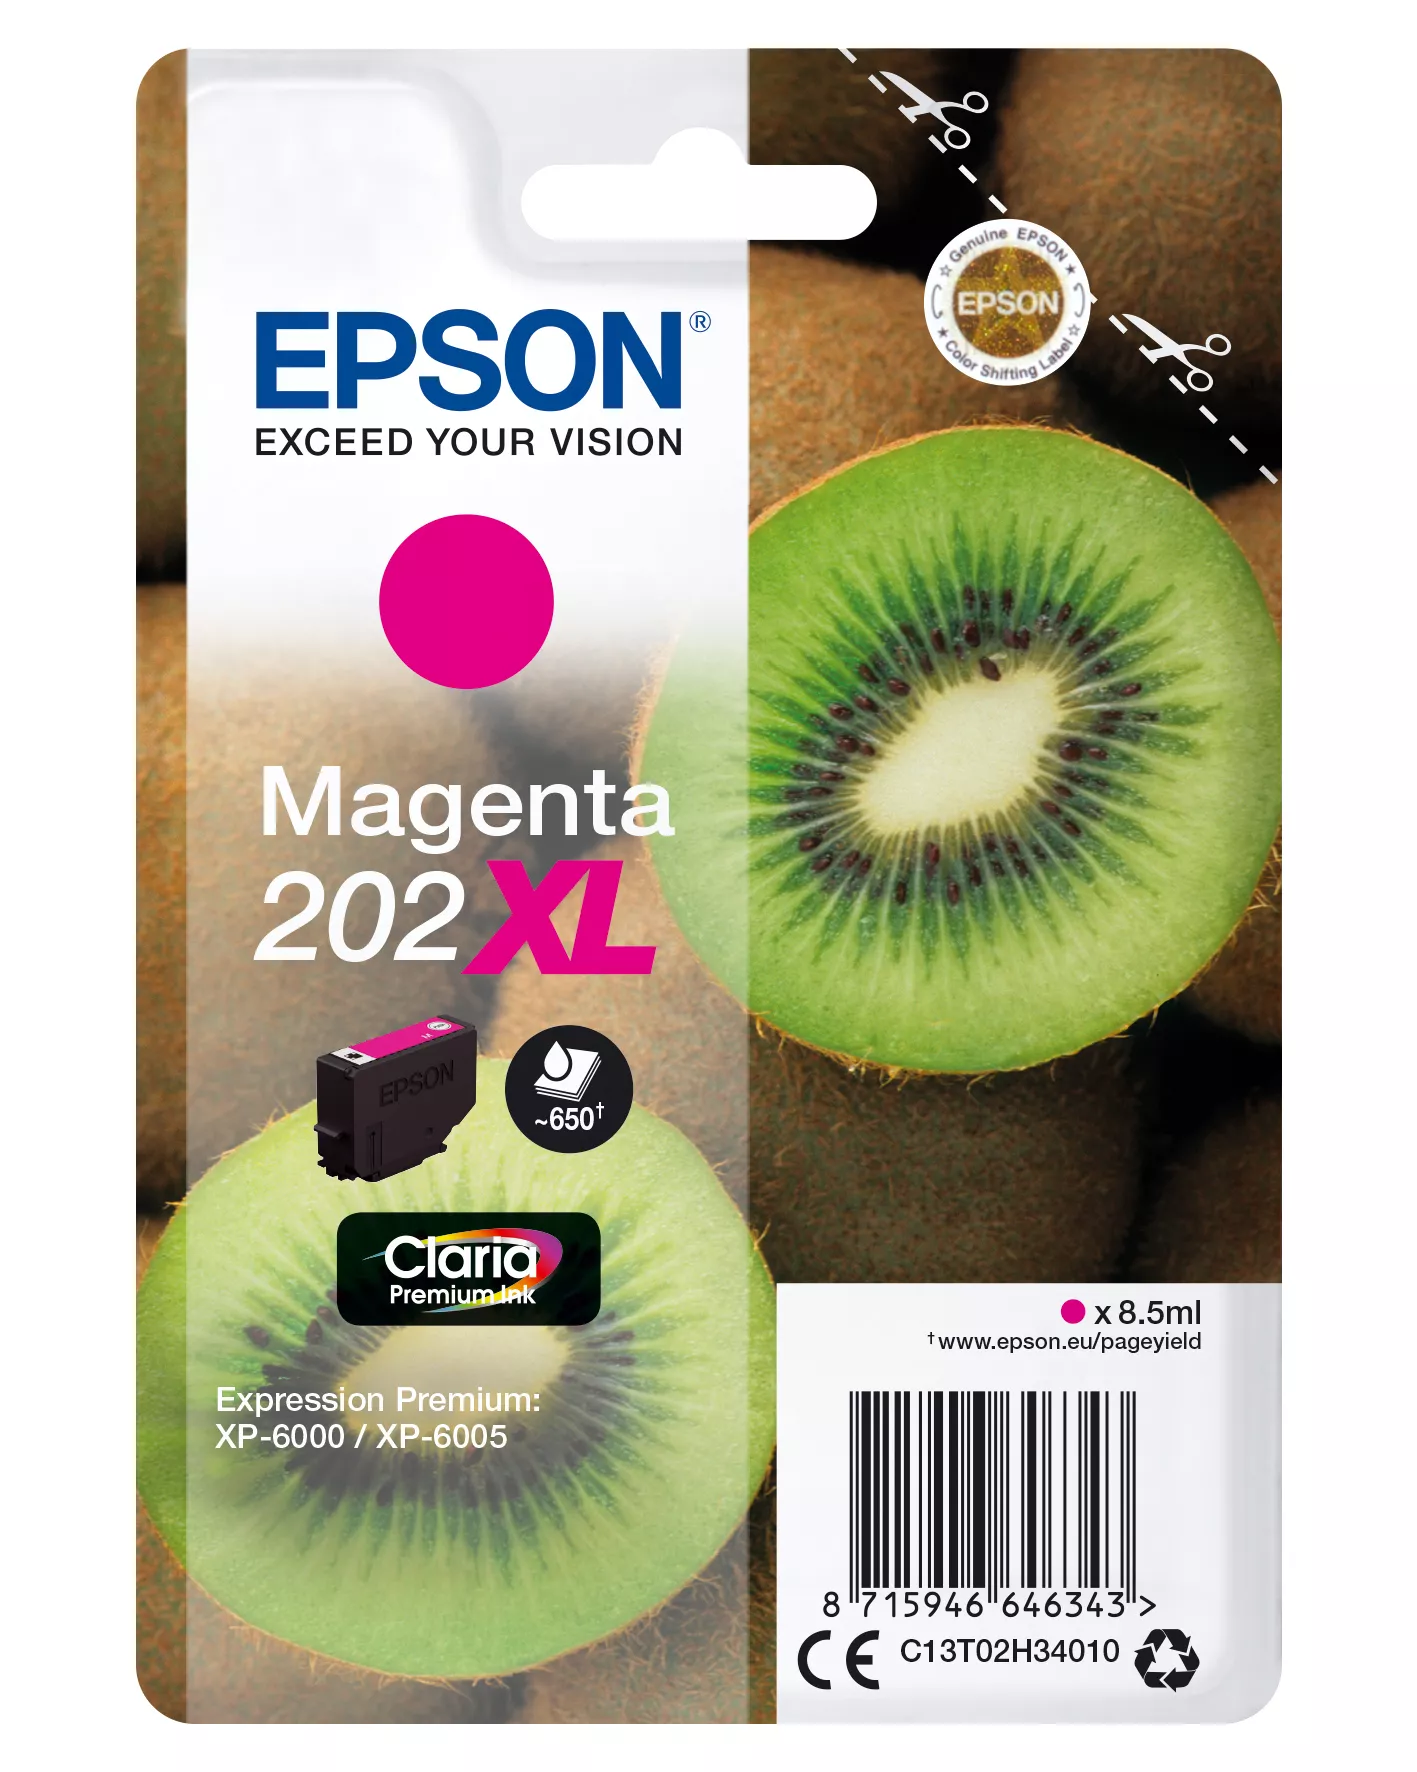 Achat EPSON Encre Claria Premium - Cartouche Kiwi 202 Magenta et autres produits de la marque Epson